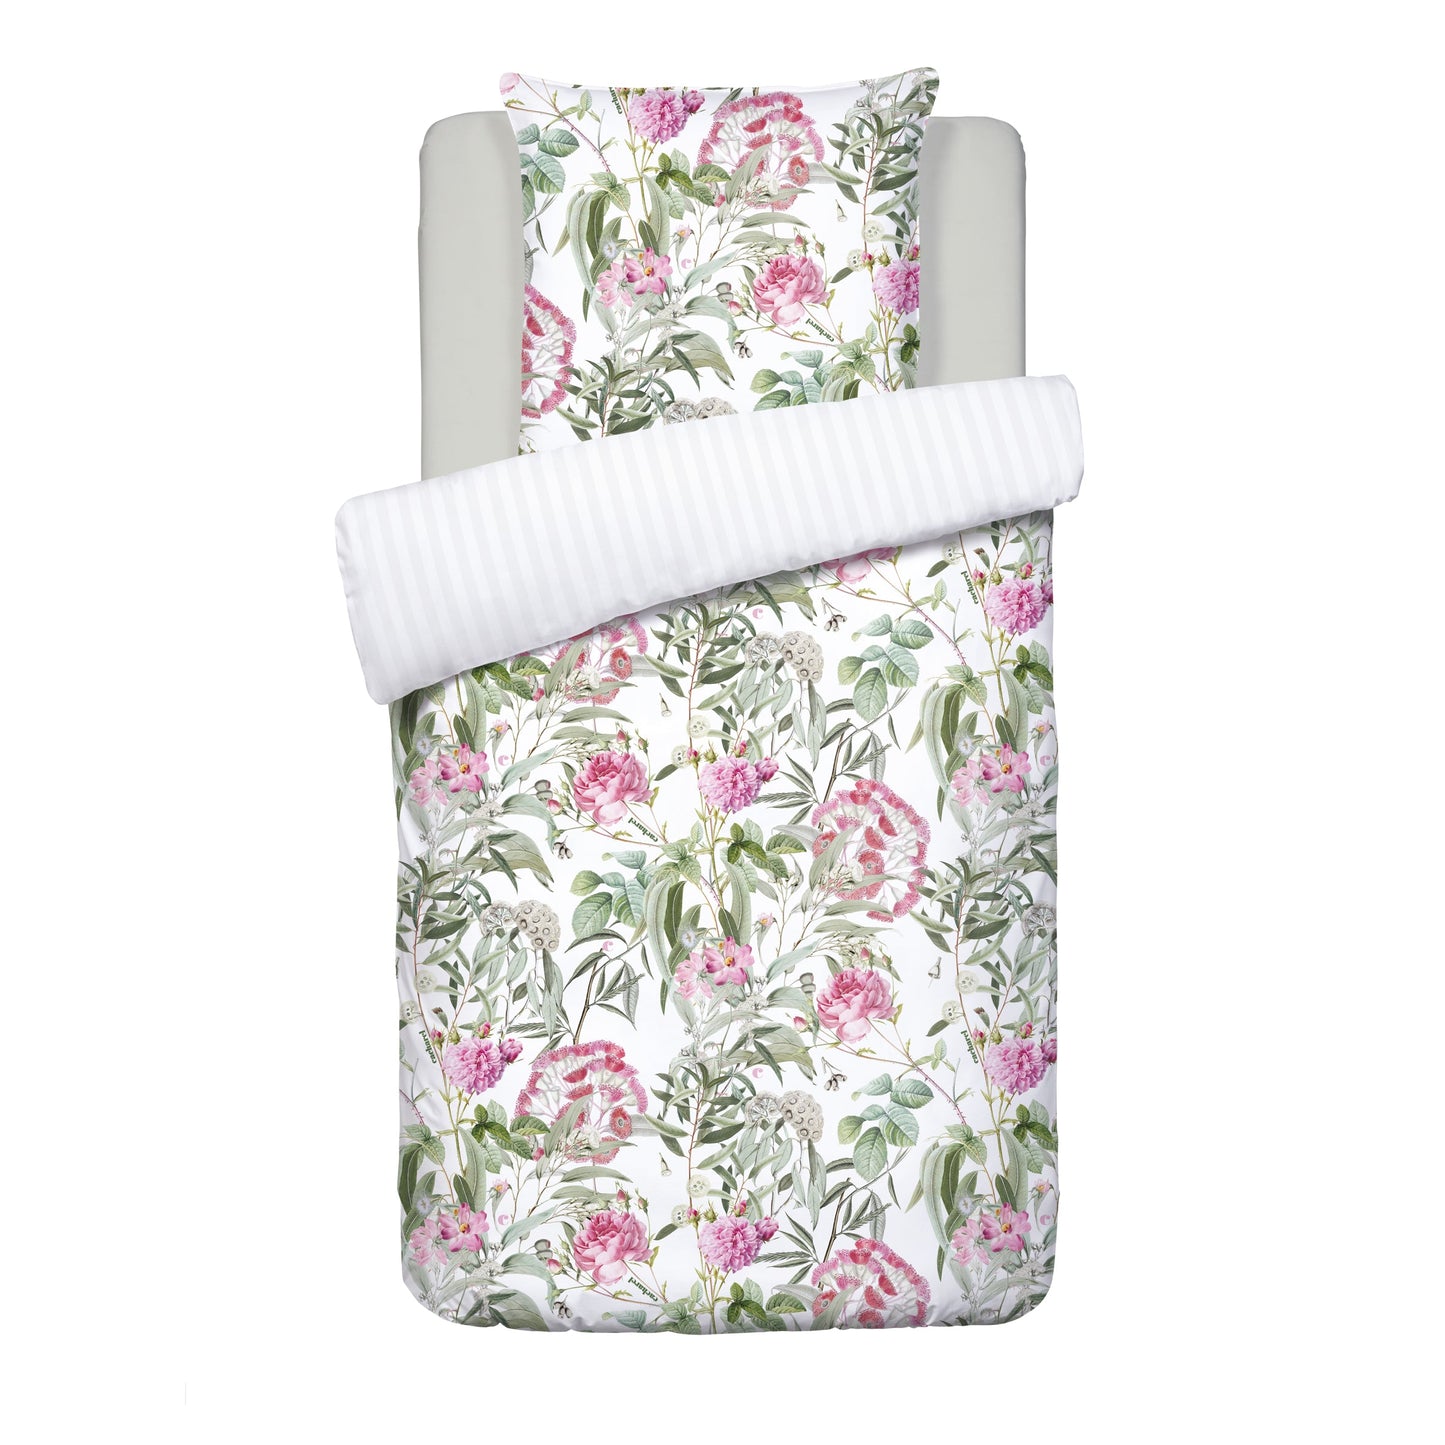 Duvet cover + pillowcase(s) cotton satin - dobby stripe Jardin de Roses White